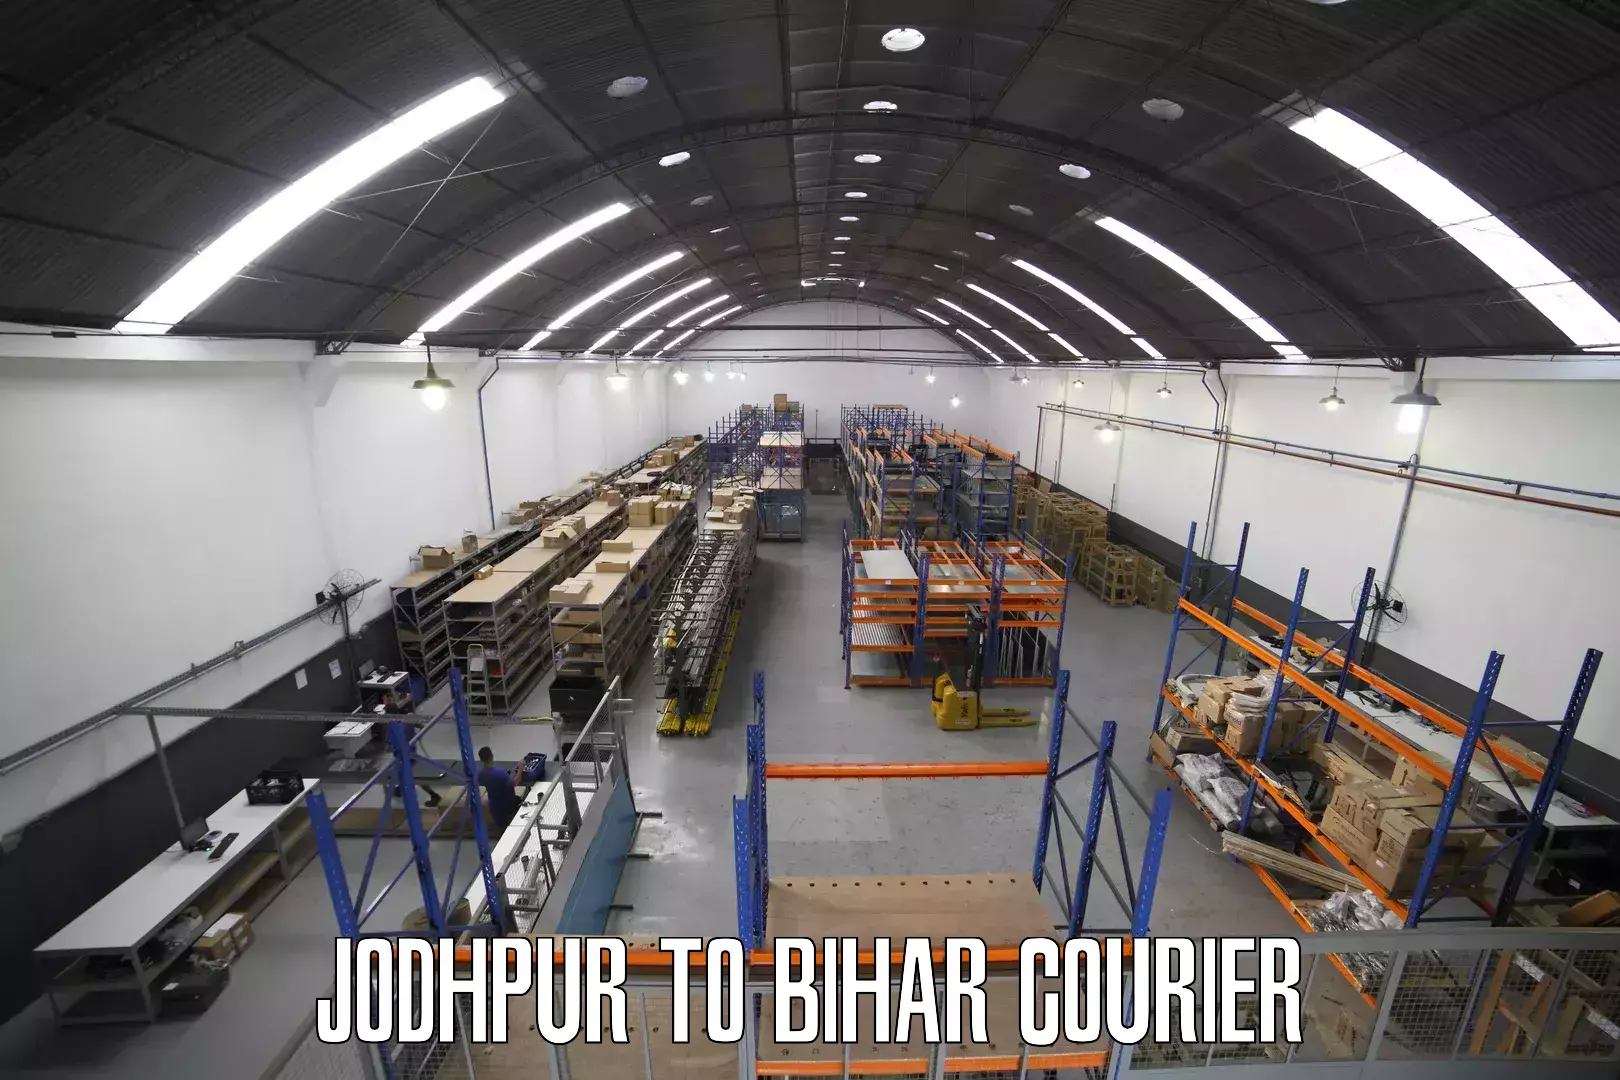 Urban courier service Jodhpur to Jamui